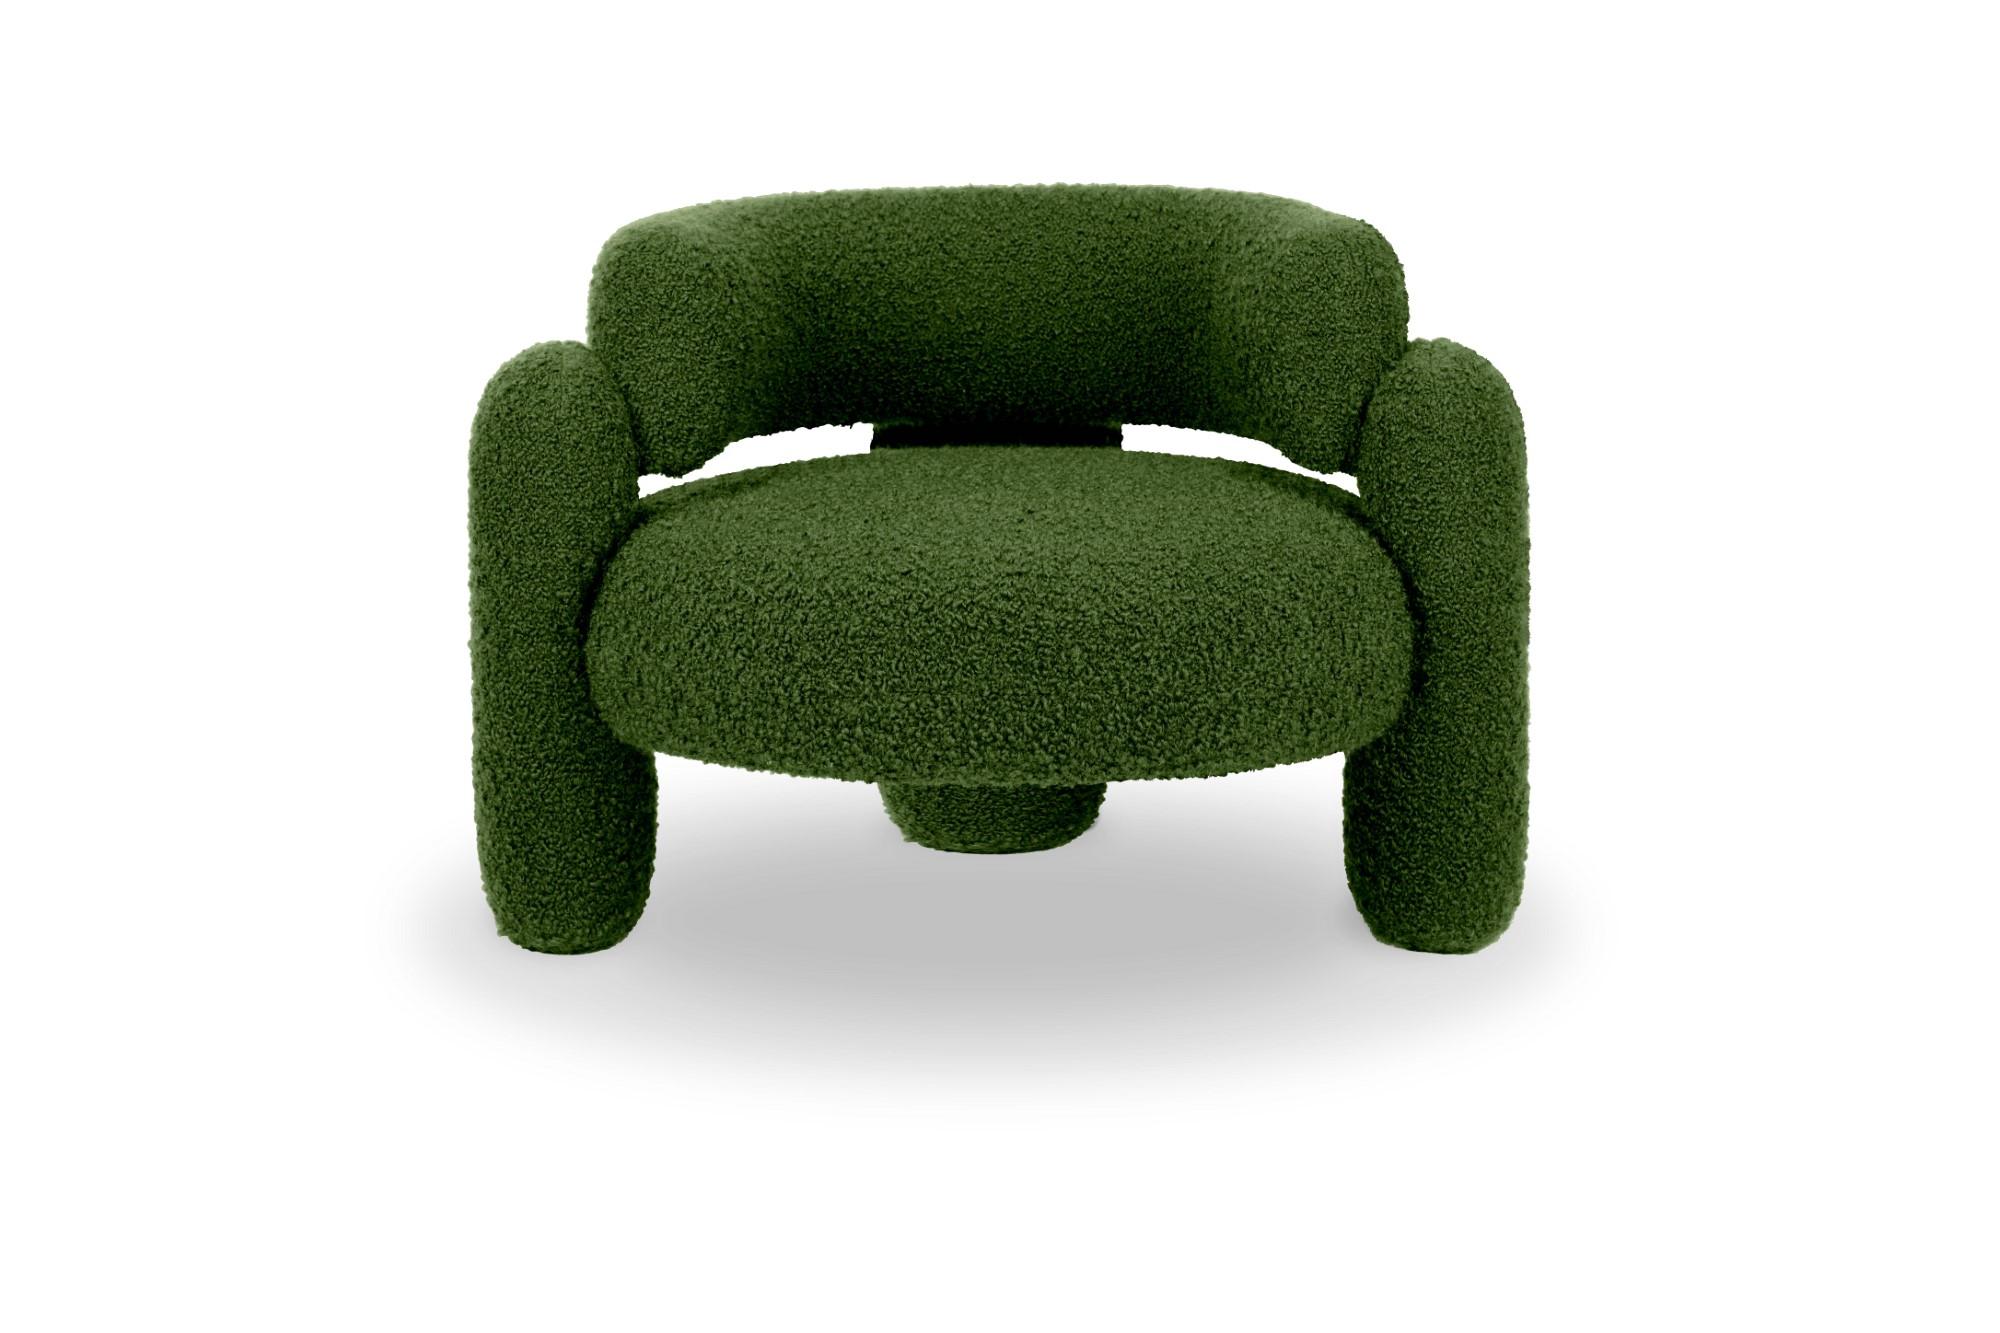 Embrace Cormo-Sessel mit Smaragd von Royal Stranger
Abmessungen: B 96 x T 85 x H 68 cm.
Es sind verschiedene Farben und Ausführungen der Polsterung erhältlich. Bitte kontaktieren Sie uns.
MATERIALIEN: Polstermöbel.

Der Embrace Armchair ist eine